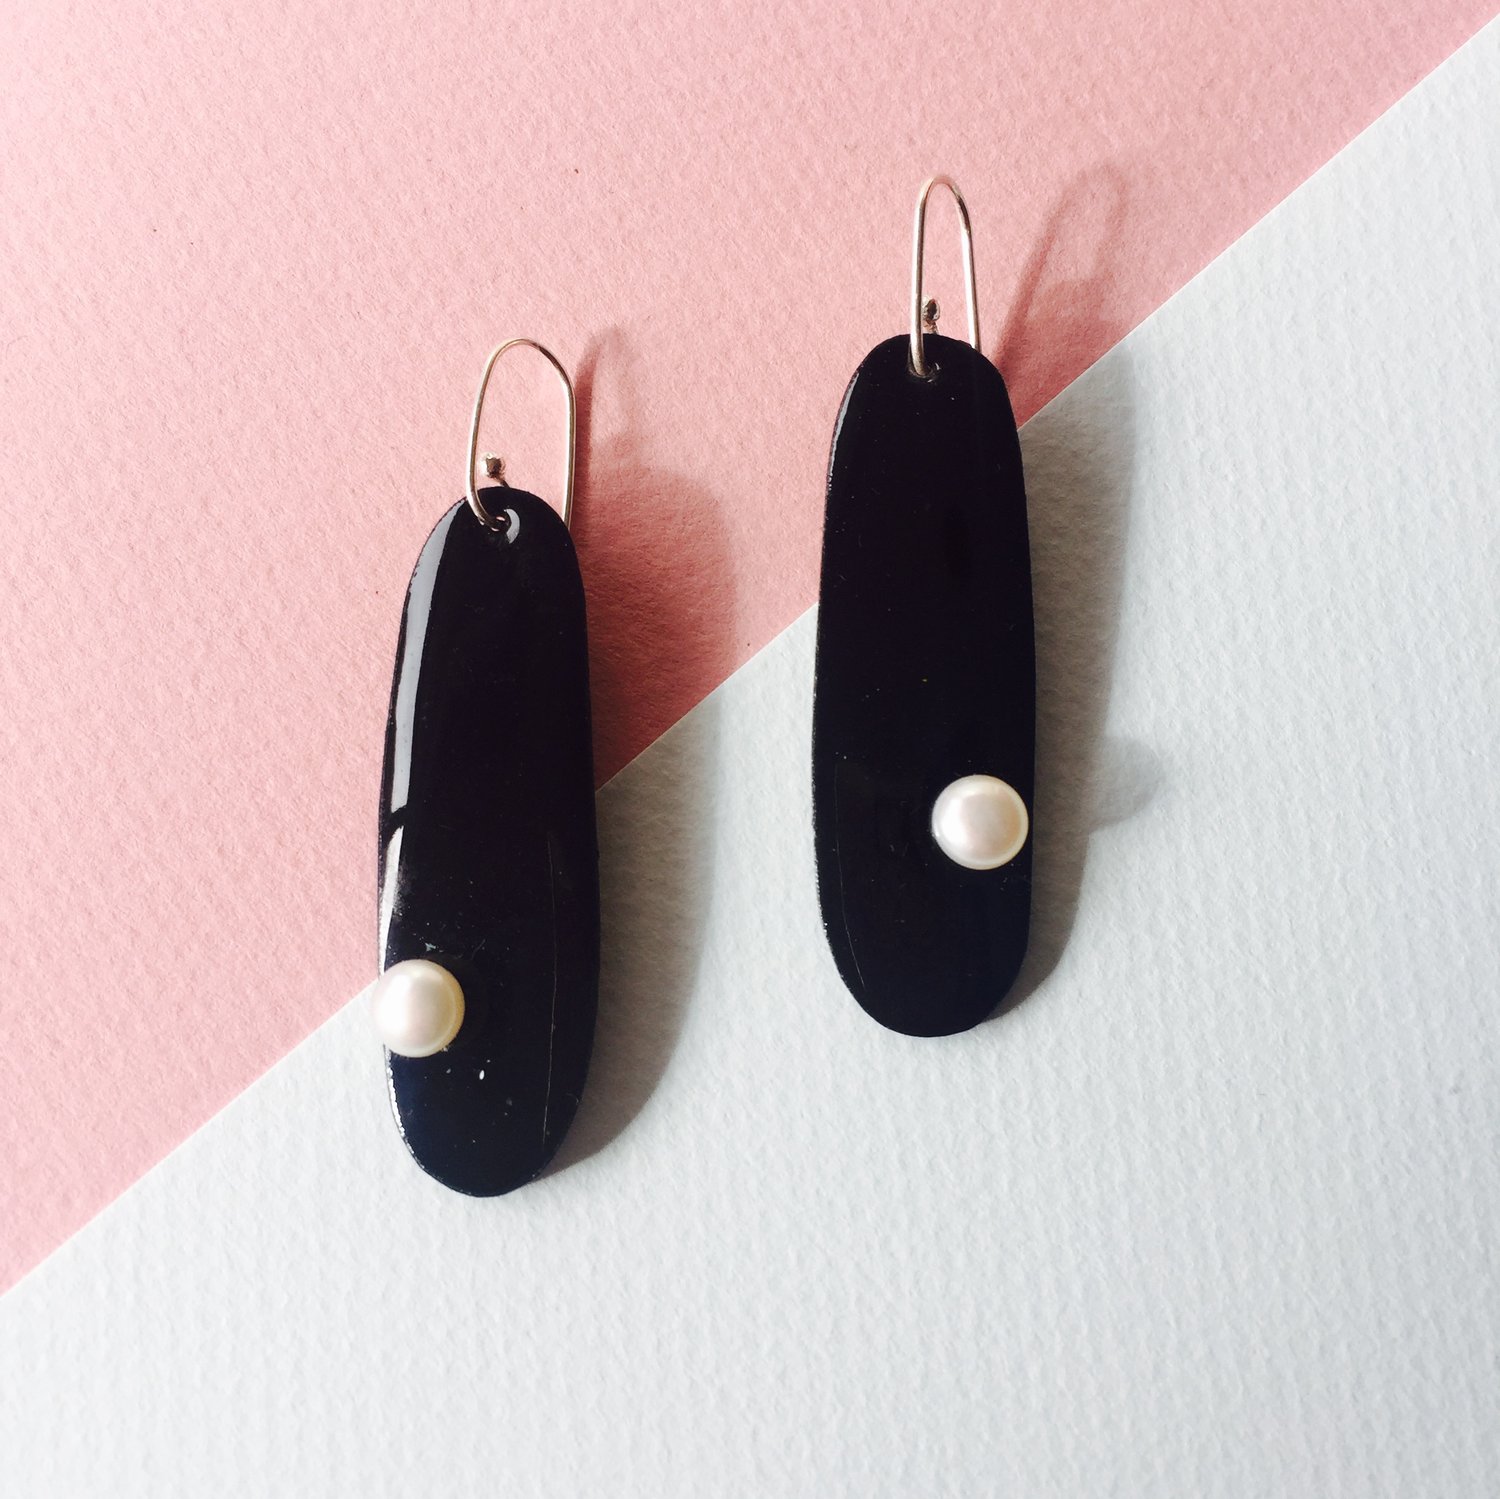 Image of Pearlies earring drop in black- medium